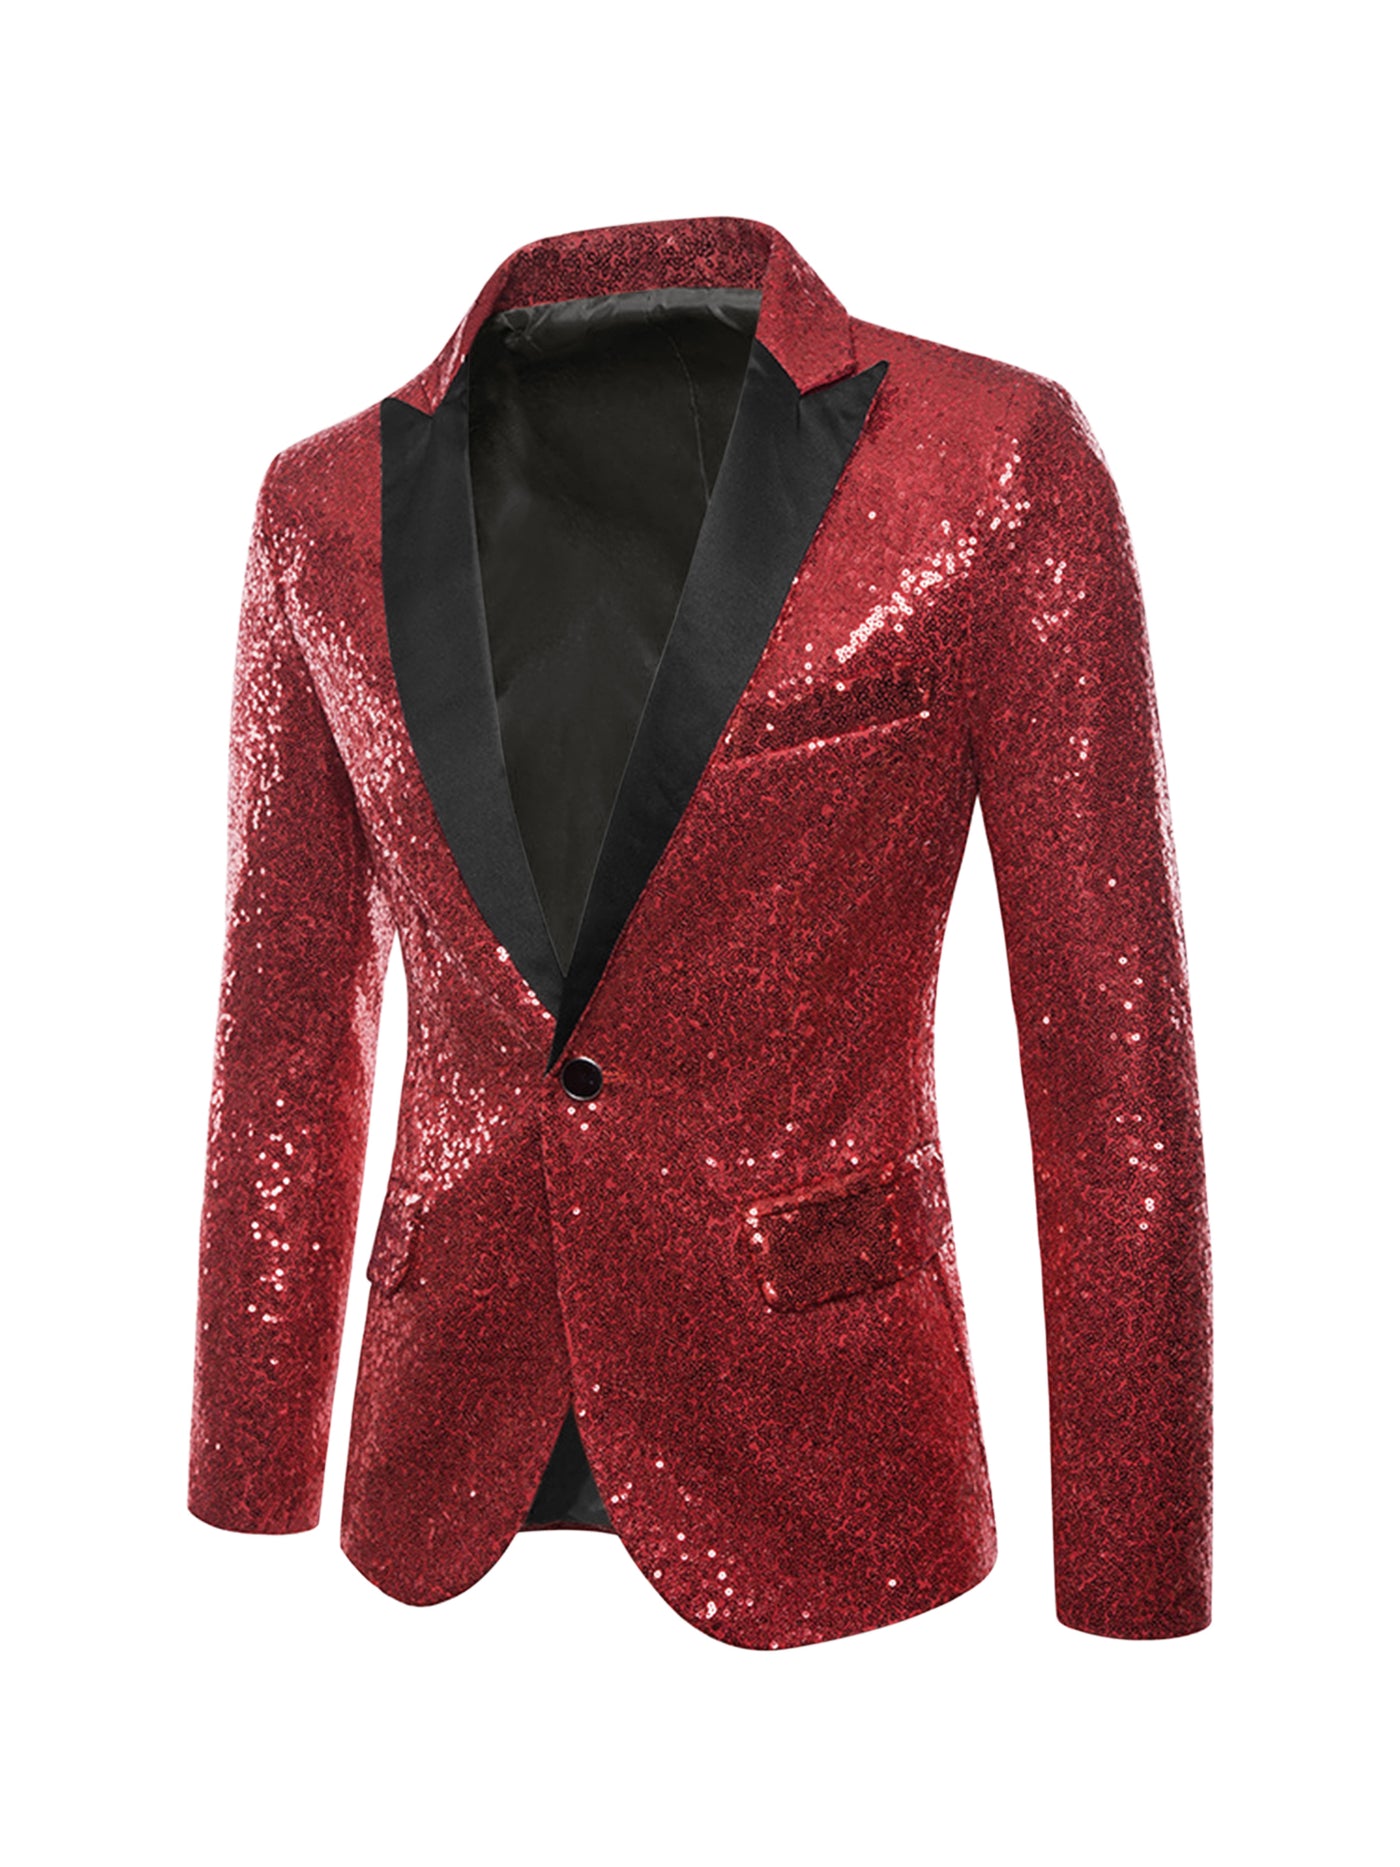 Bublédon Men's Sequin Suit Jacket Peak Lapel Sparkly Party Show Glitter Sports Coat